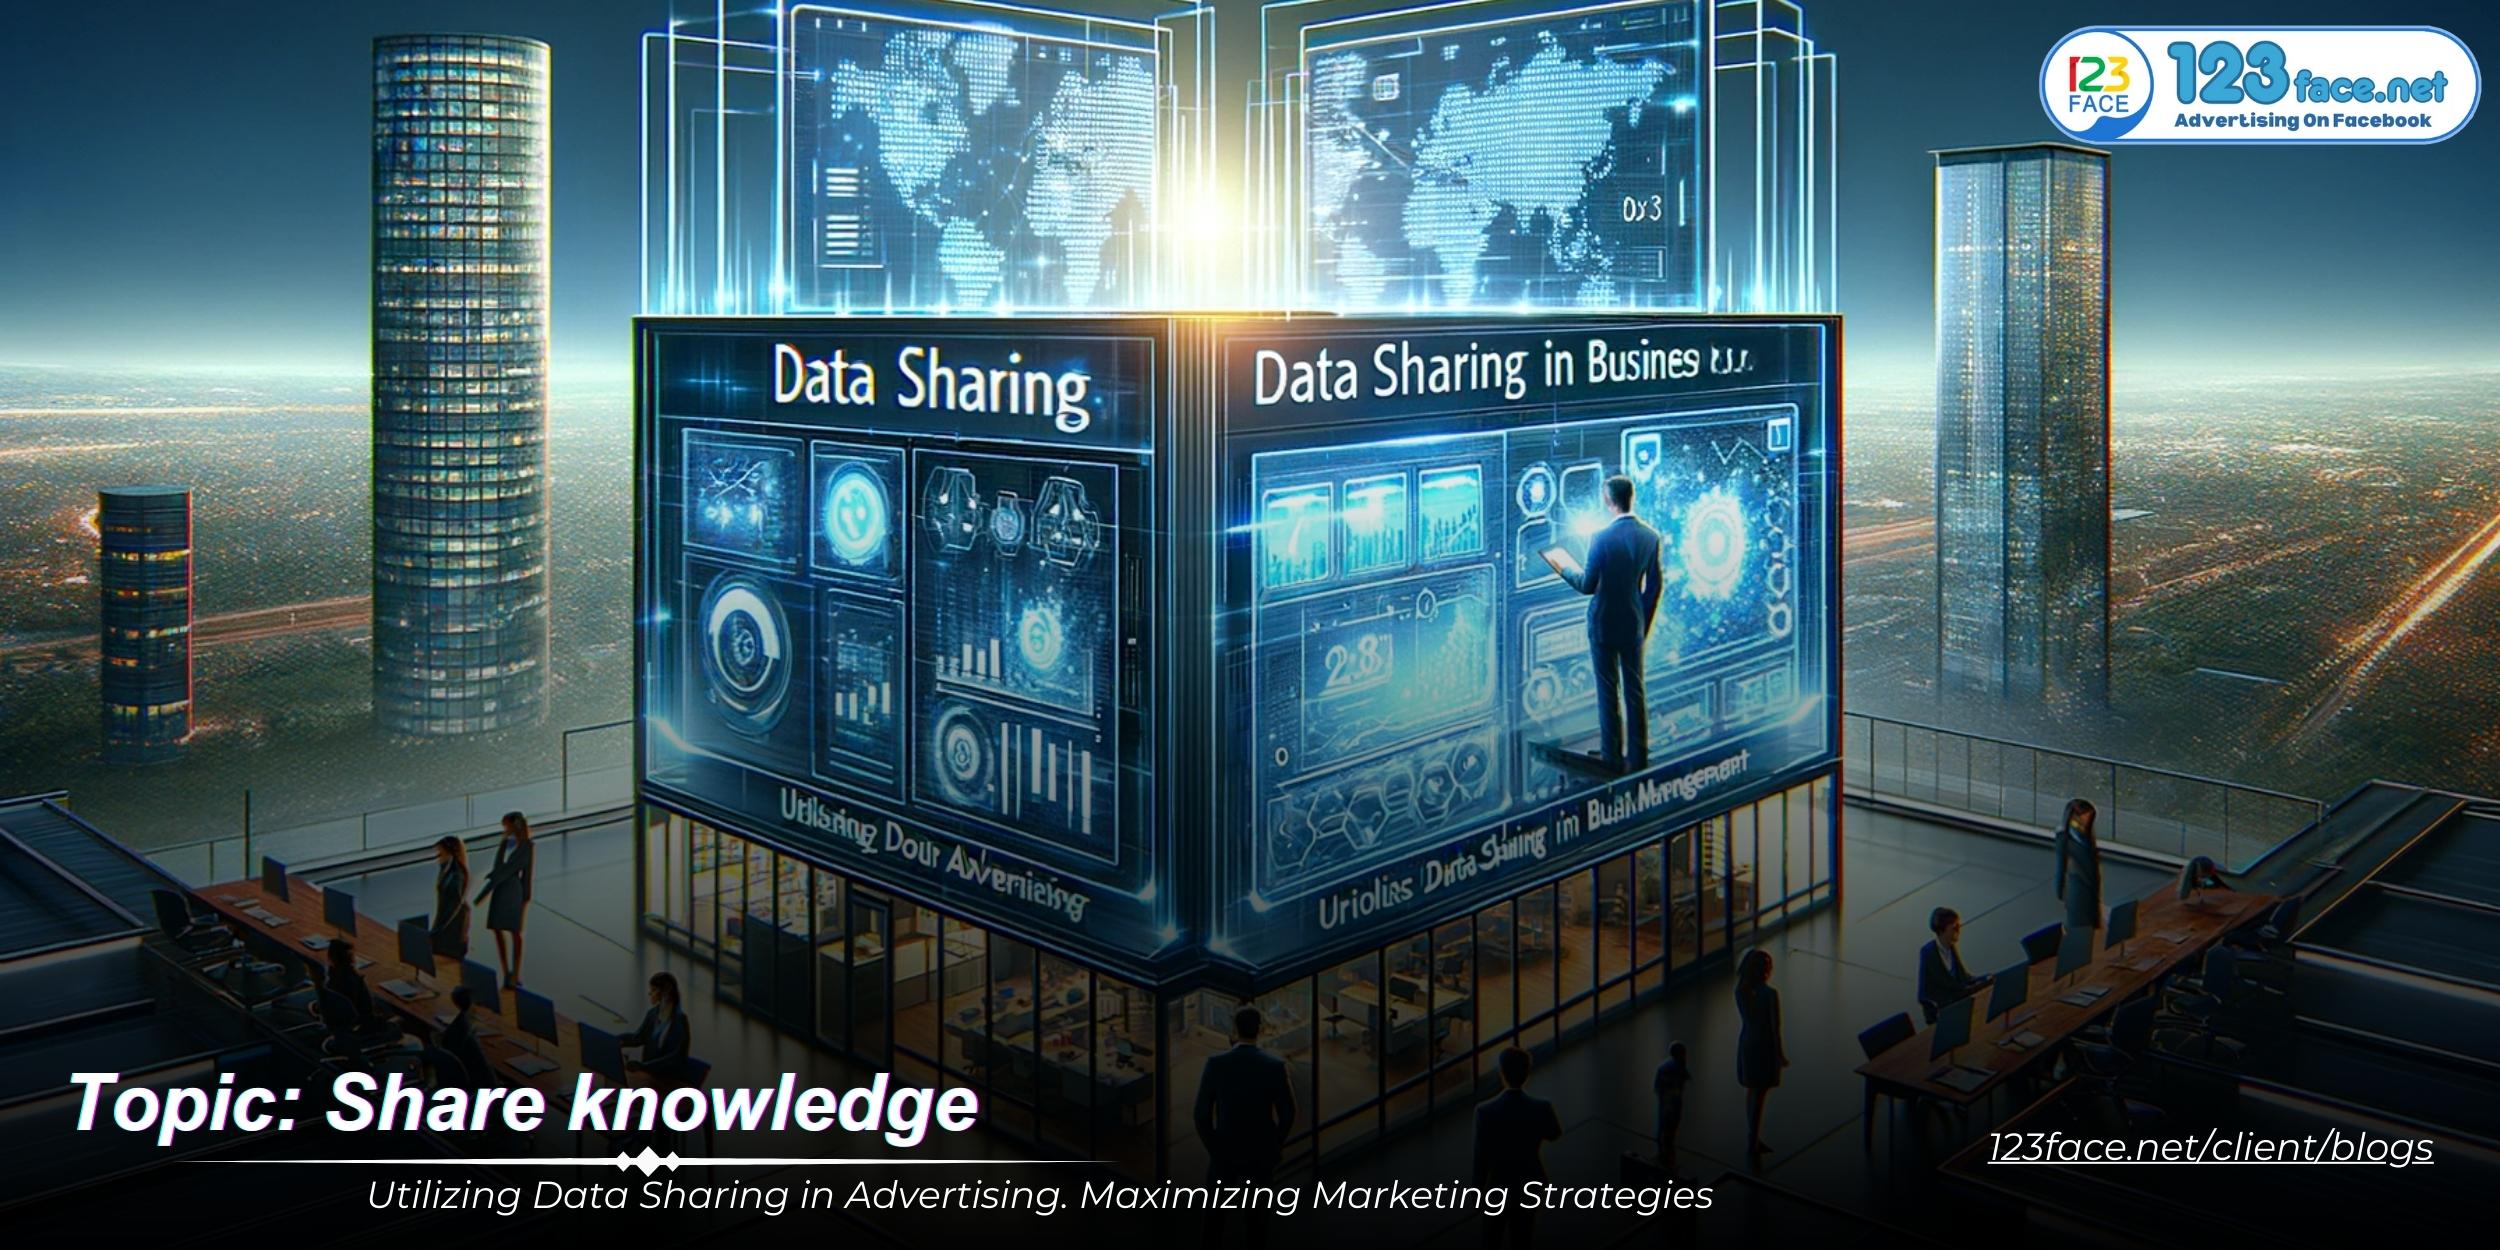 Utilizing Data Sharing in Advertising. Maximizing Marketing Strategies